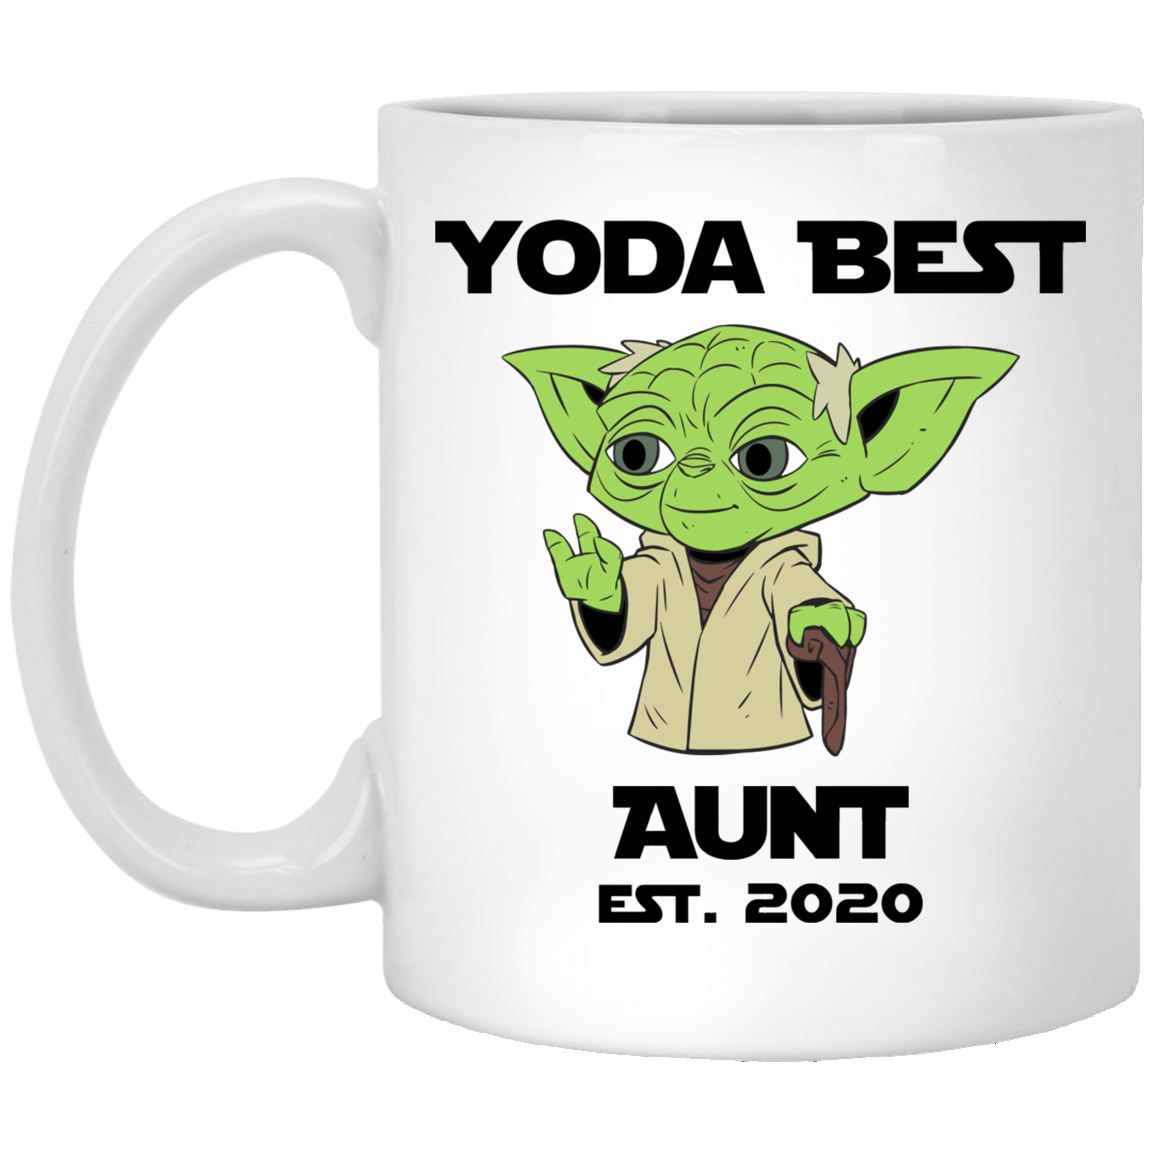 Yoda Best Aunt 2020 Mug